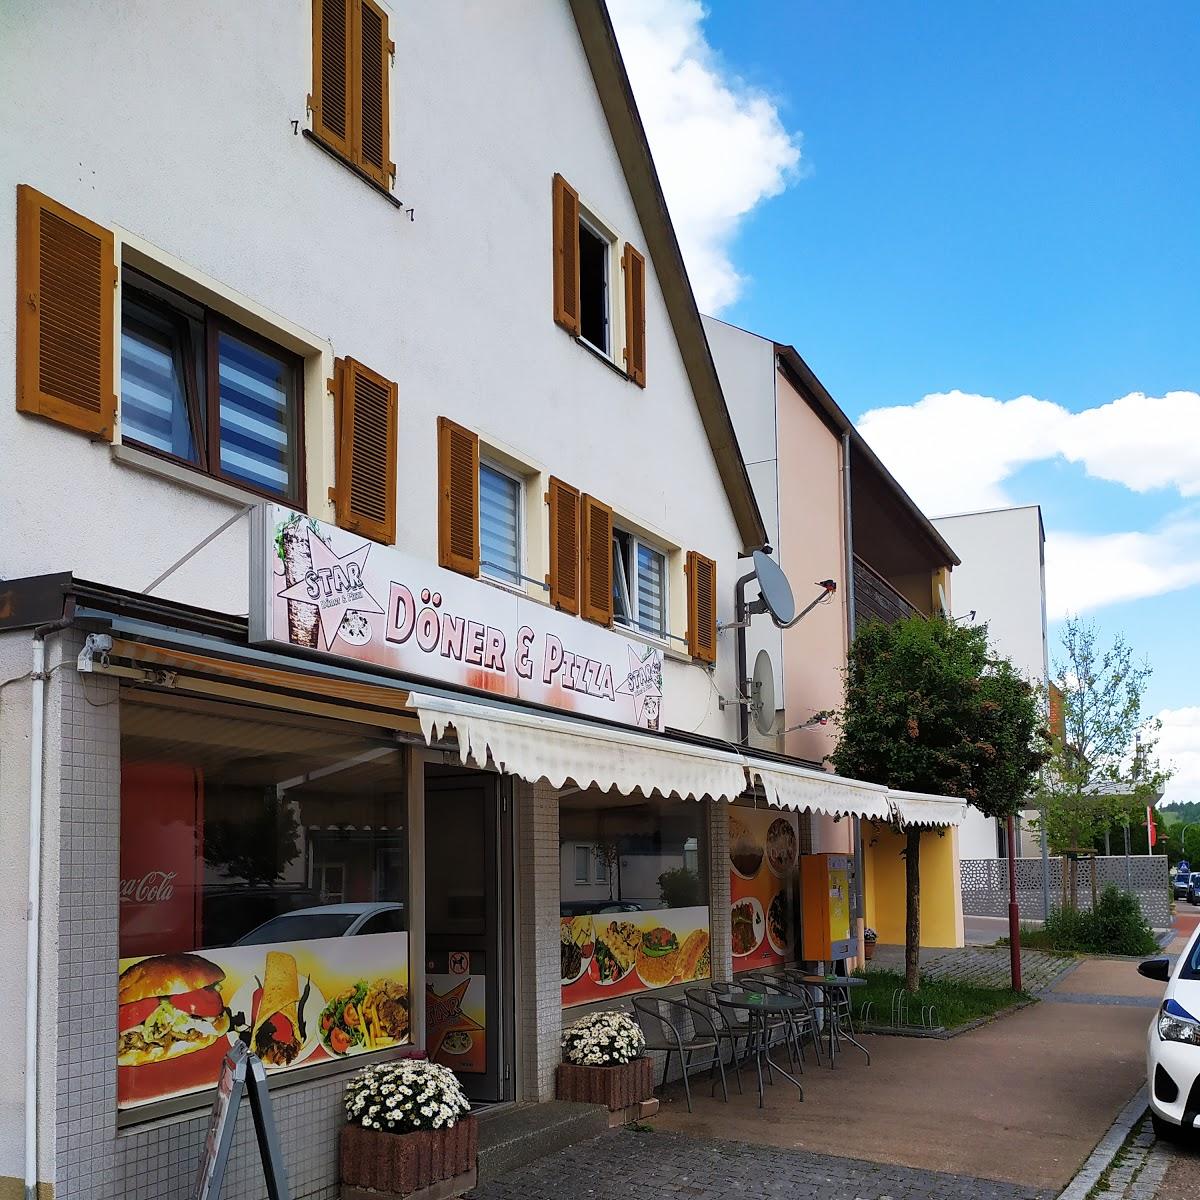 Restaurant "Döner & Pizza" in Steinheim am Albuch